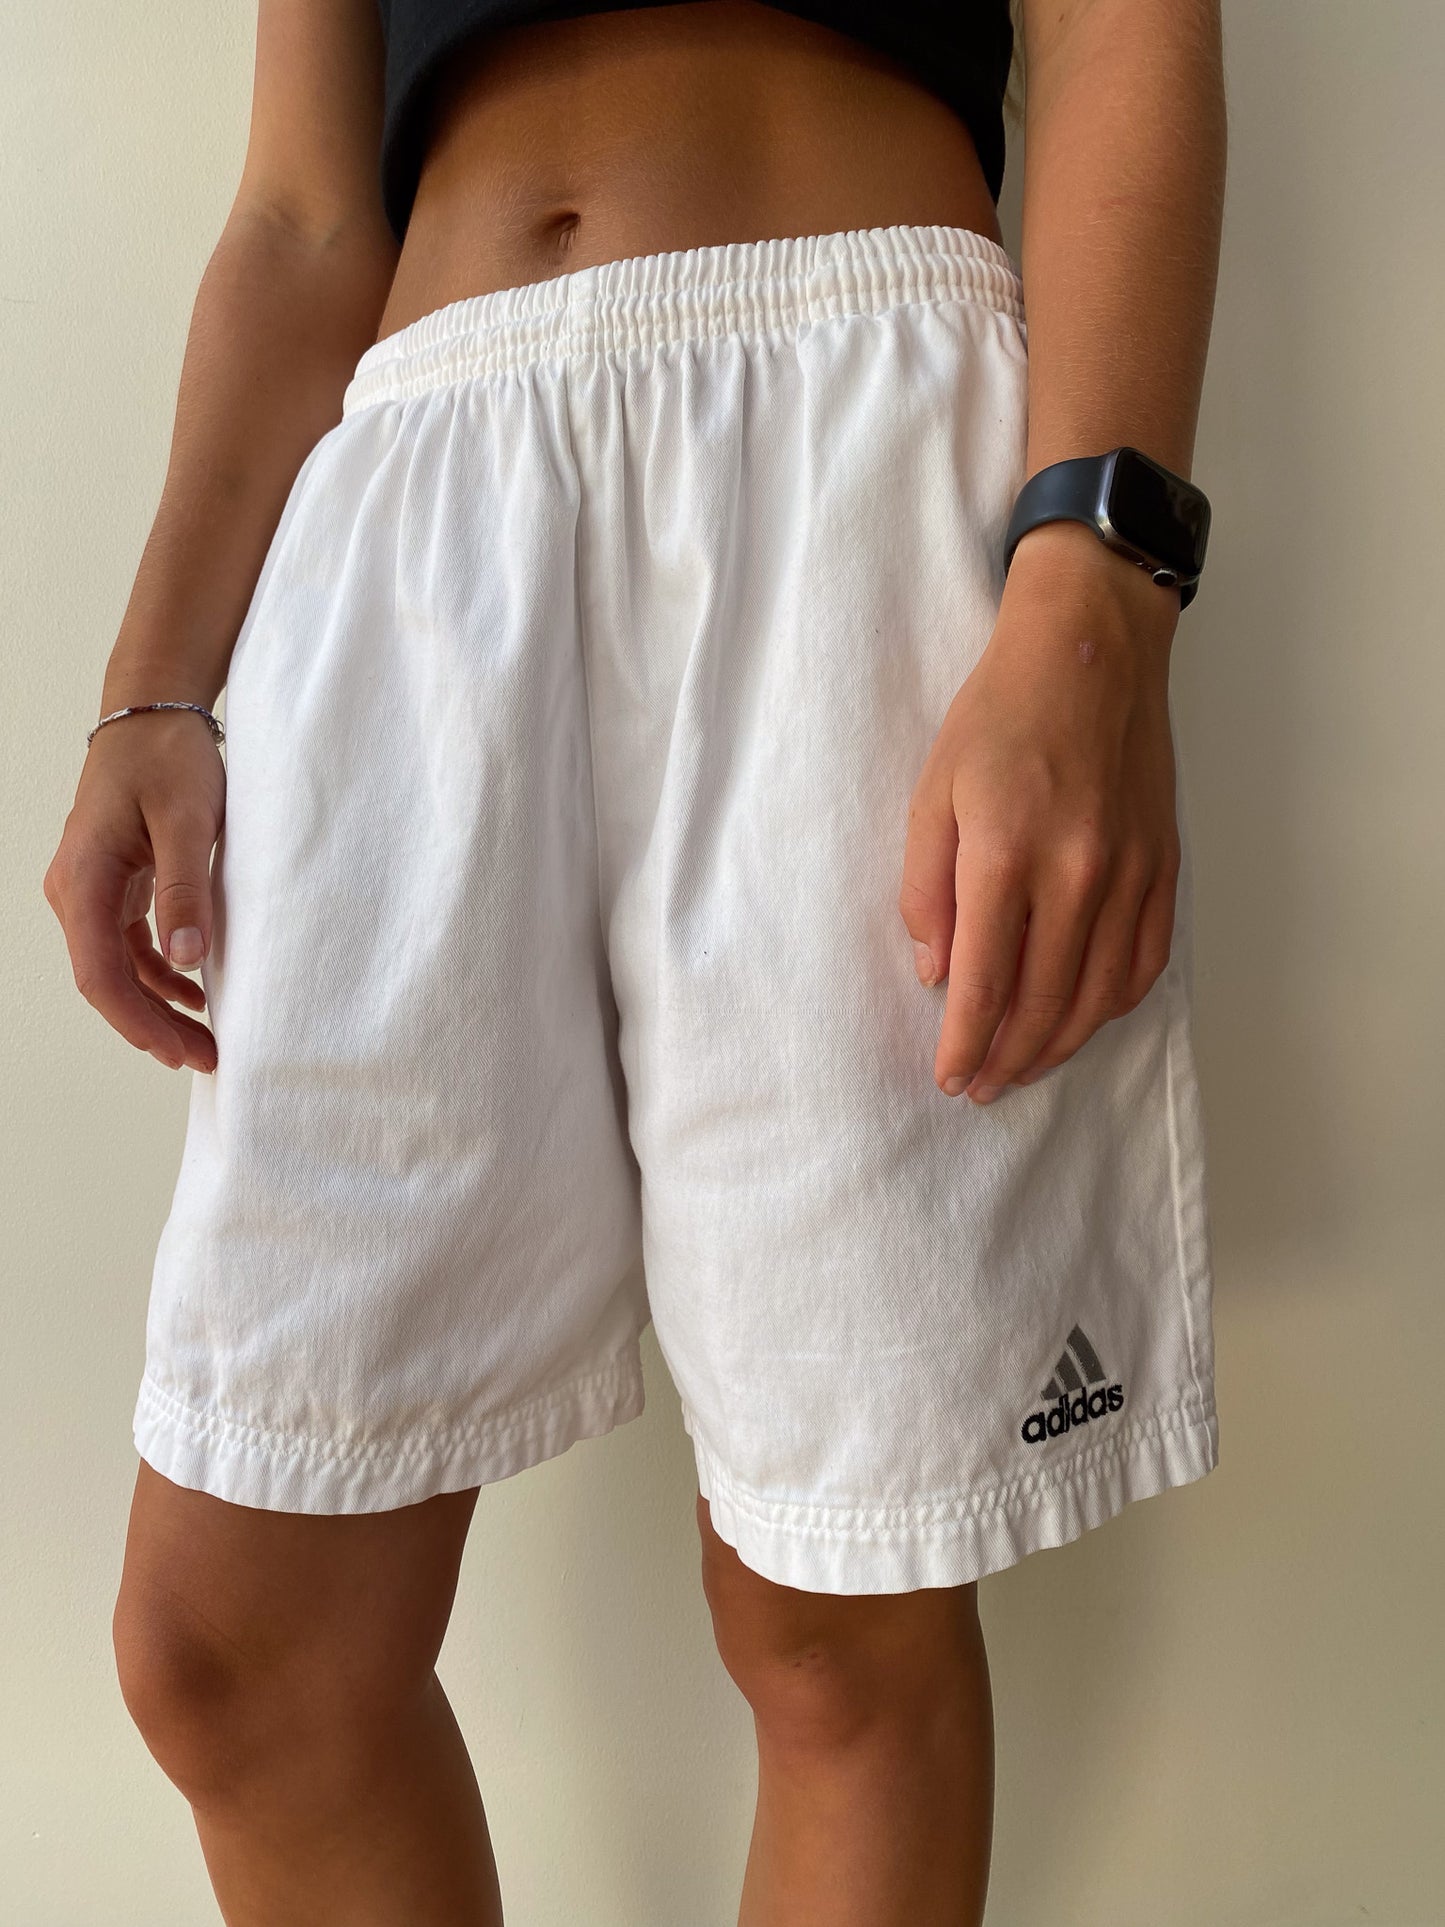 Kærlig Mount Bank Minefelt Adidas Cotton Track Shorts—[S] – mahshu